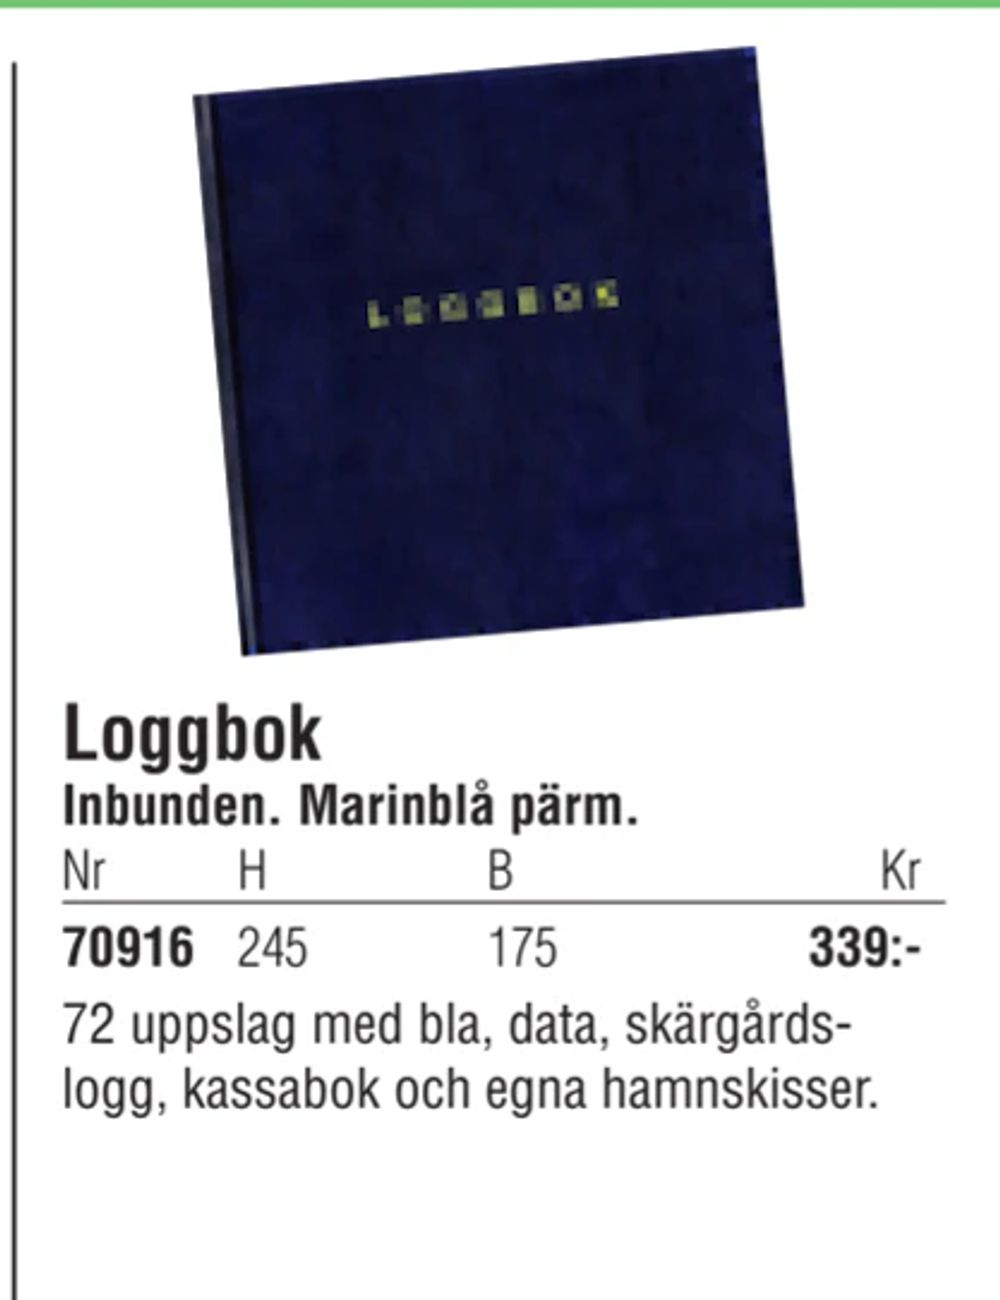 Erbjudanden på Loggbok från Erlandsons Brygga för 339 kr